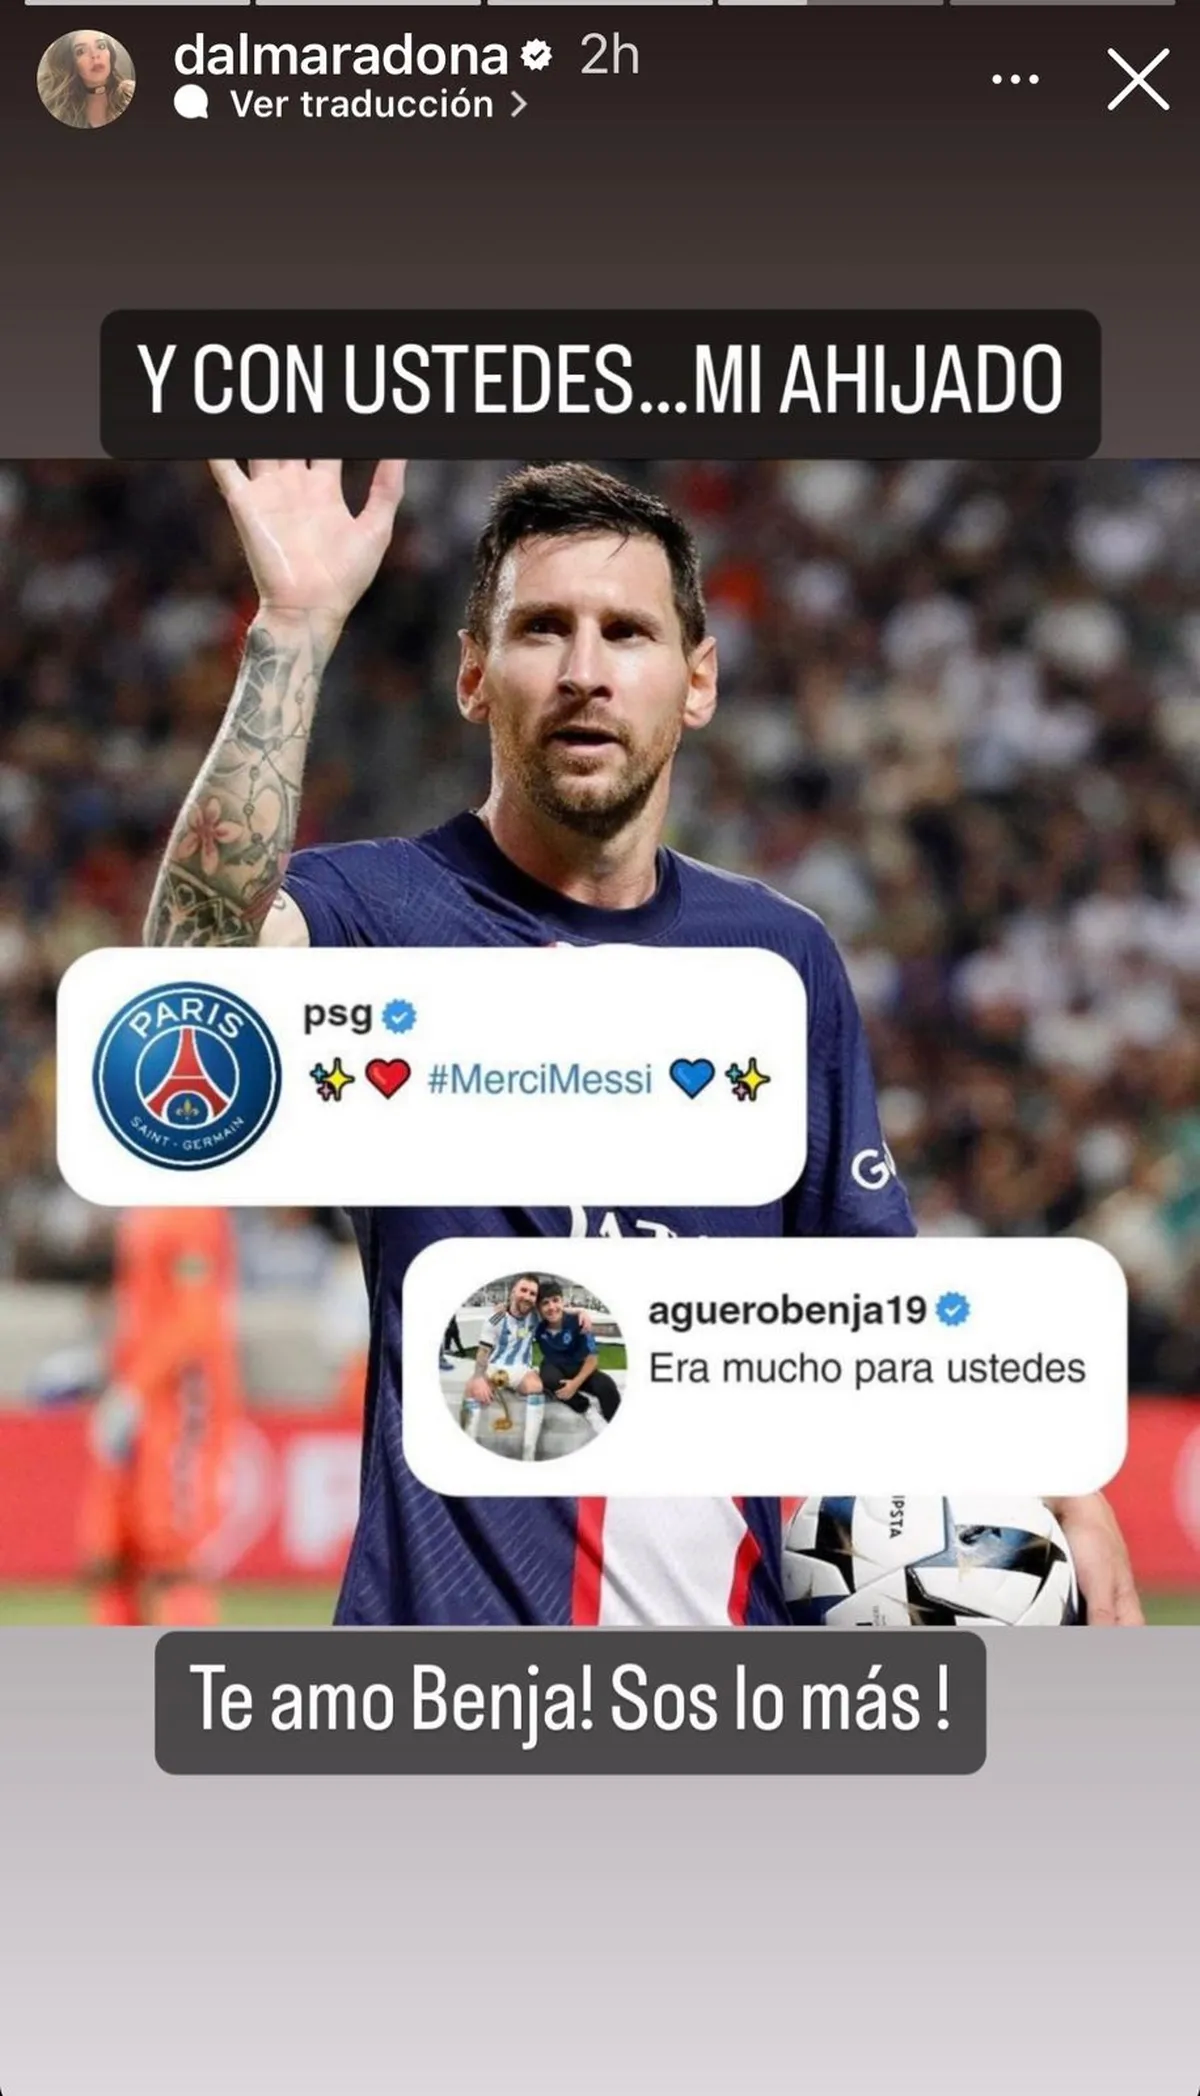 El mensaje de Benjamín Agüero en apoyo a Messi y enorgulleció a su tía